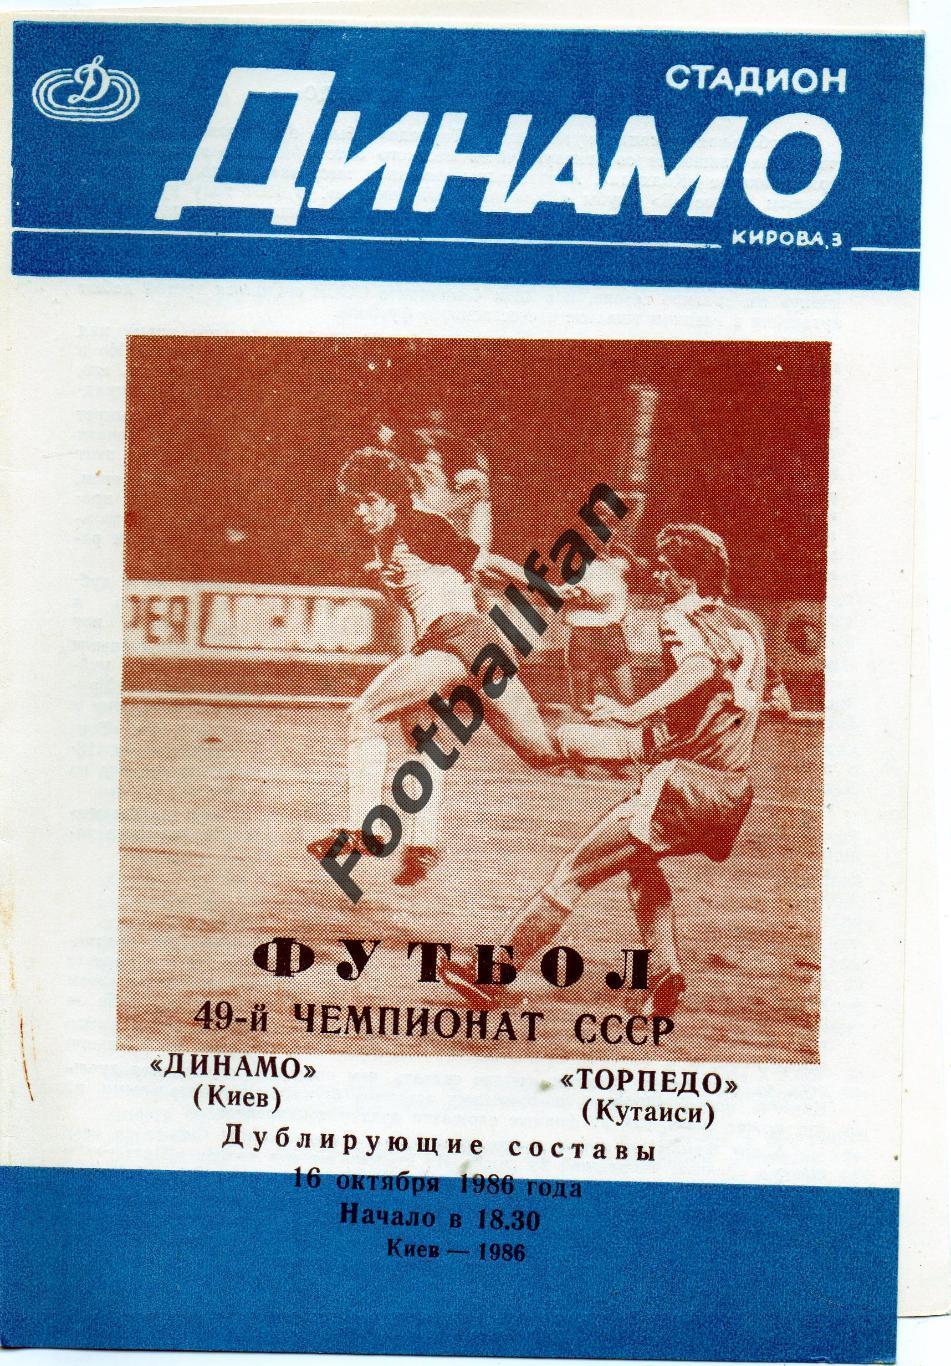 Динамо Киев - Торпедо Кутаиси 16.10.1986 дубль